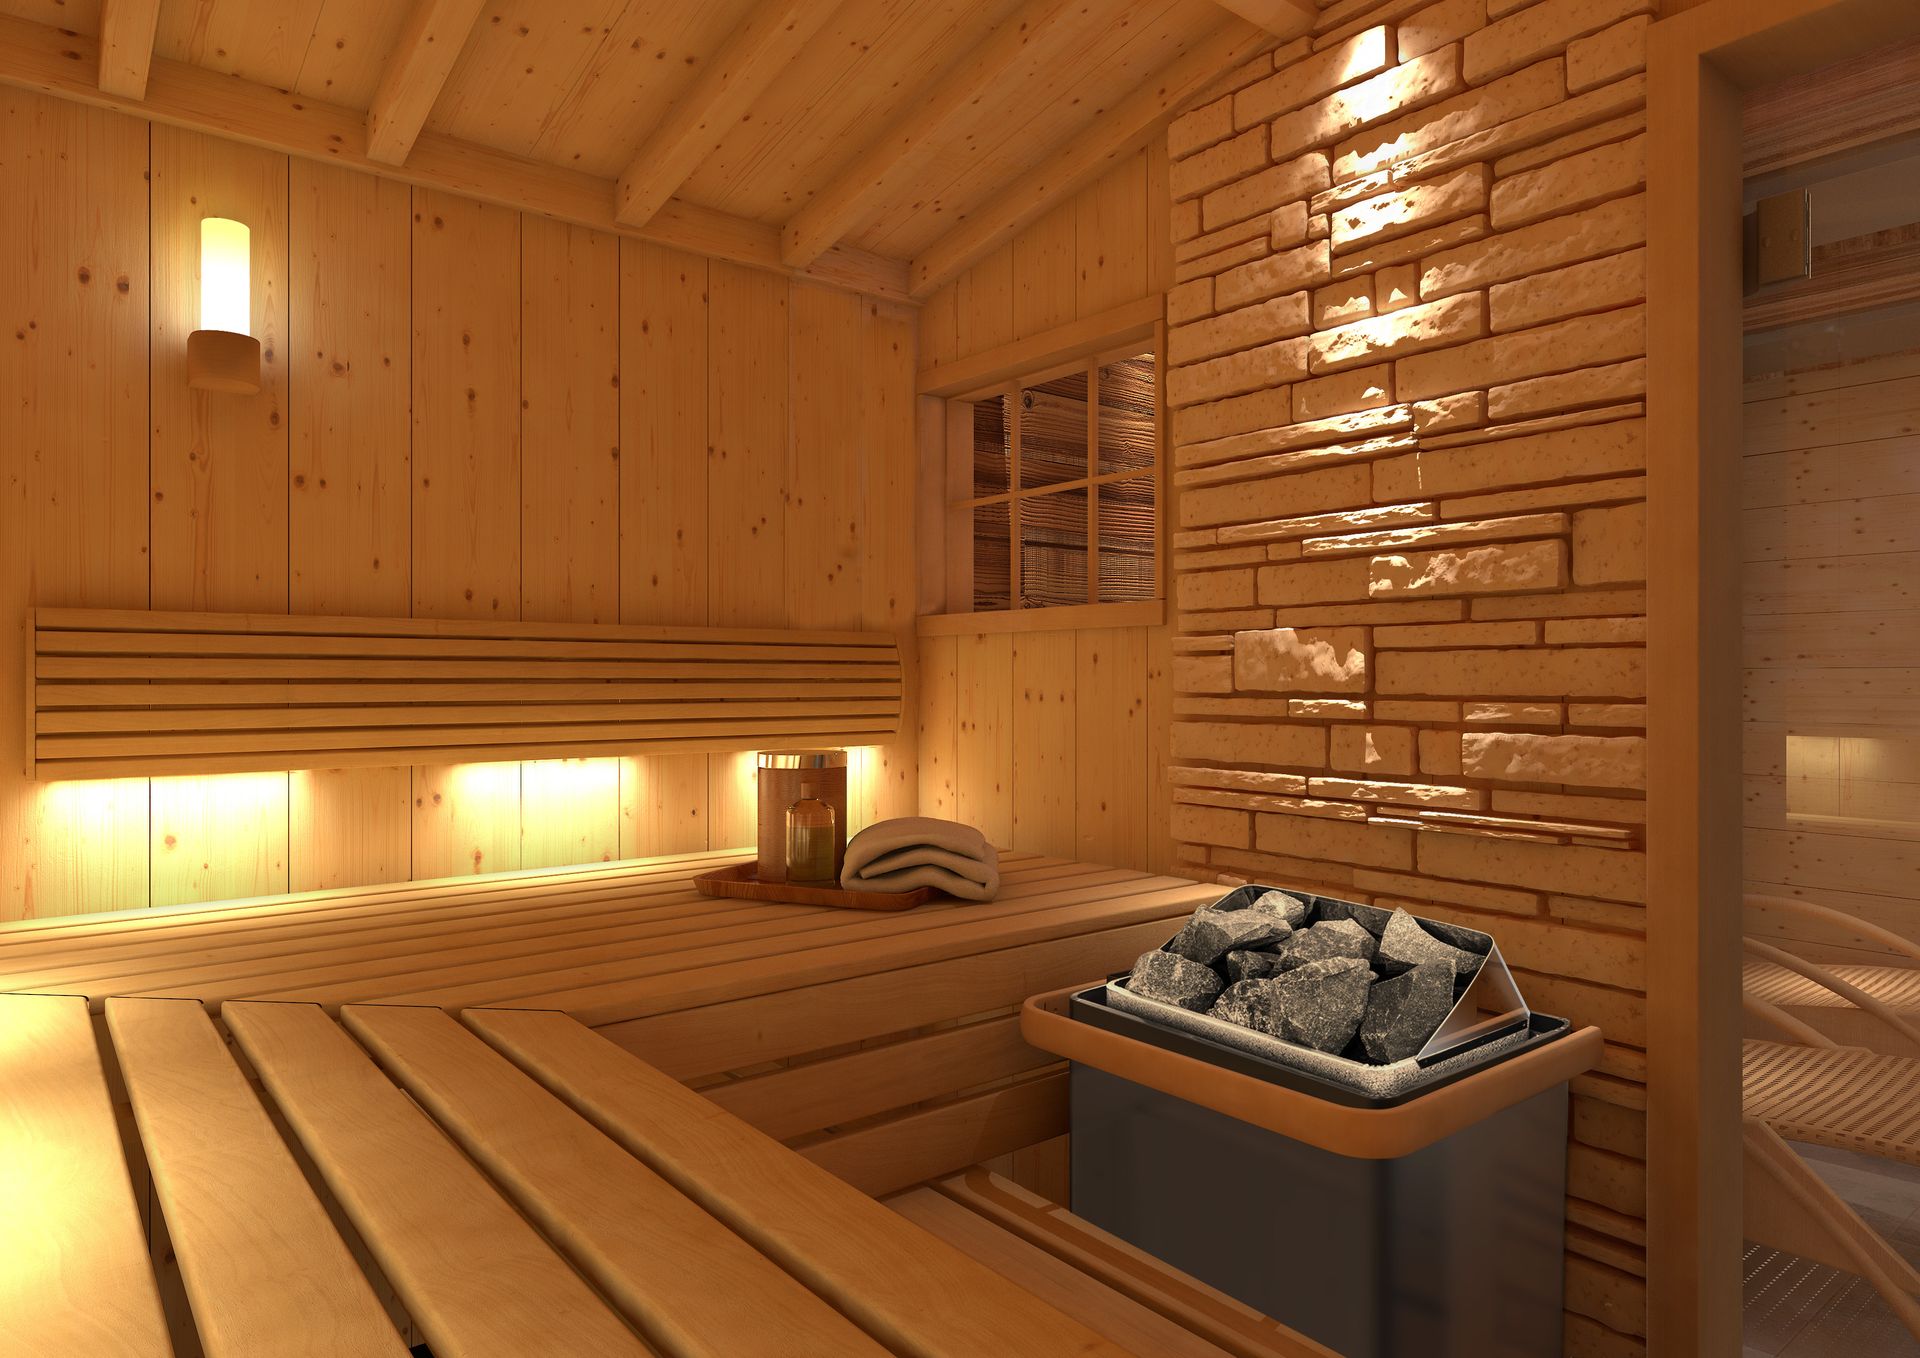 Jaki piec do sauny wybrać? – poradnik